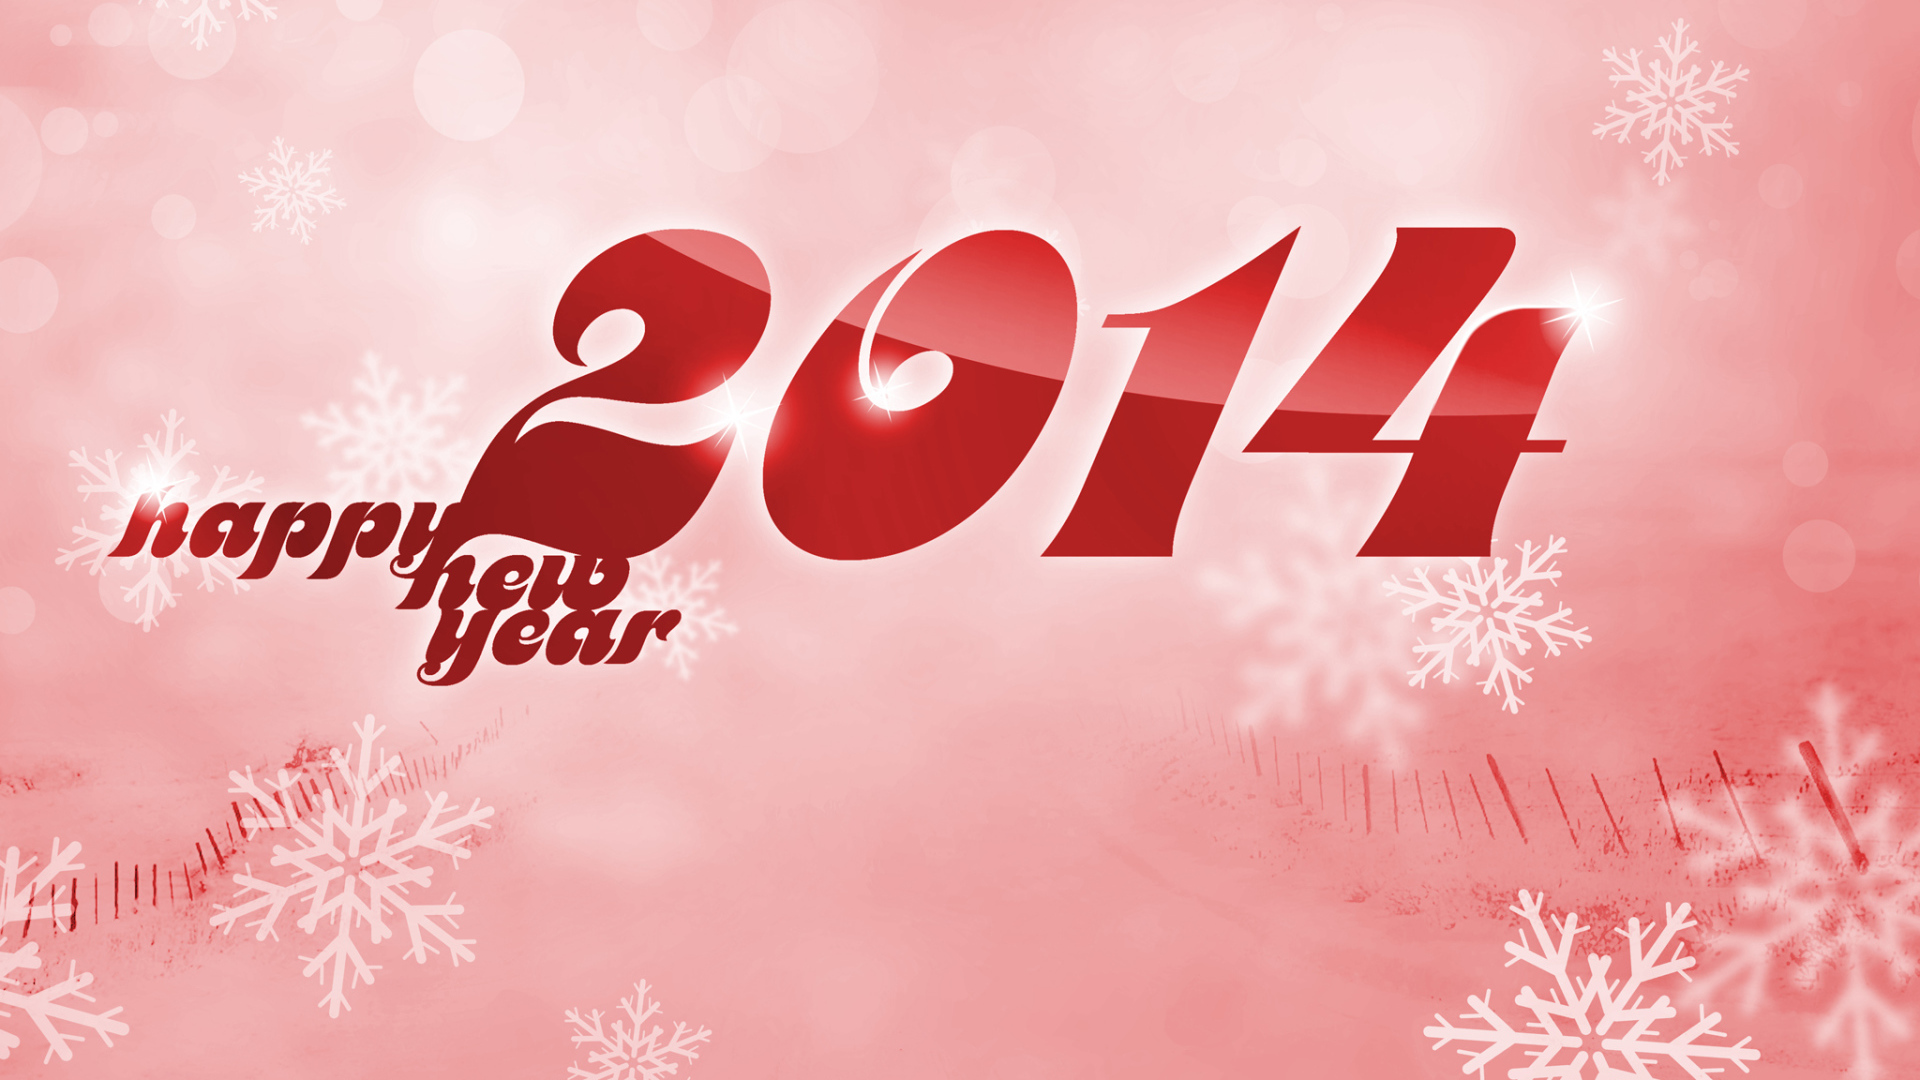 Счастливого Нового Года 2014, розовый фон и снежинки